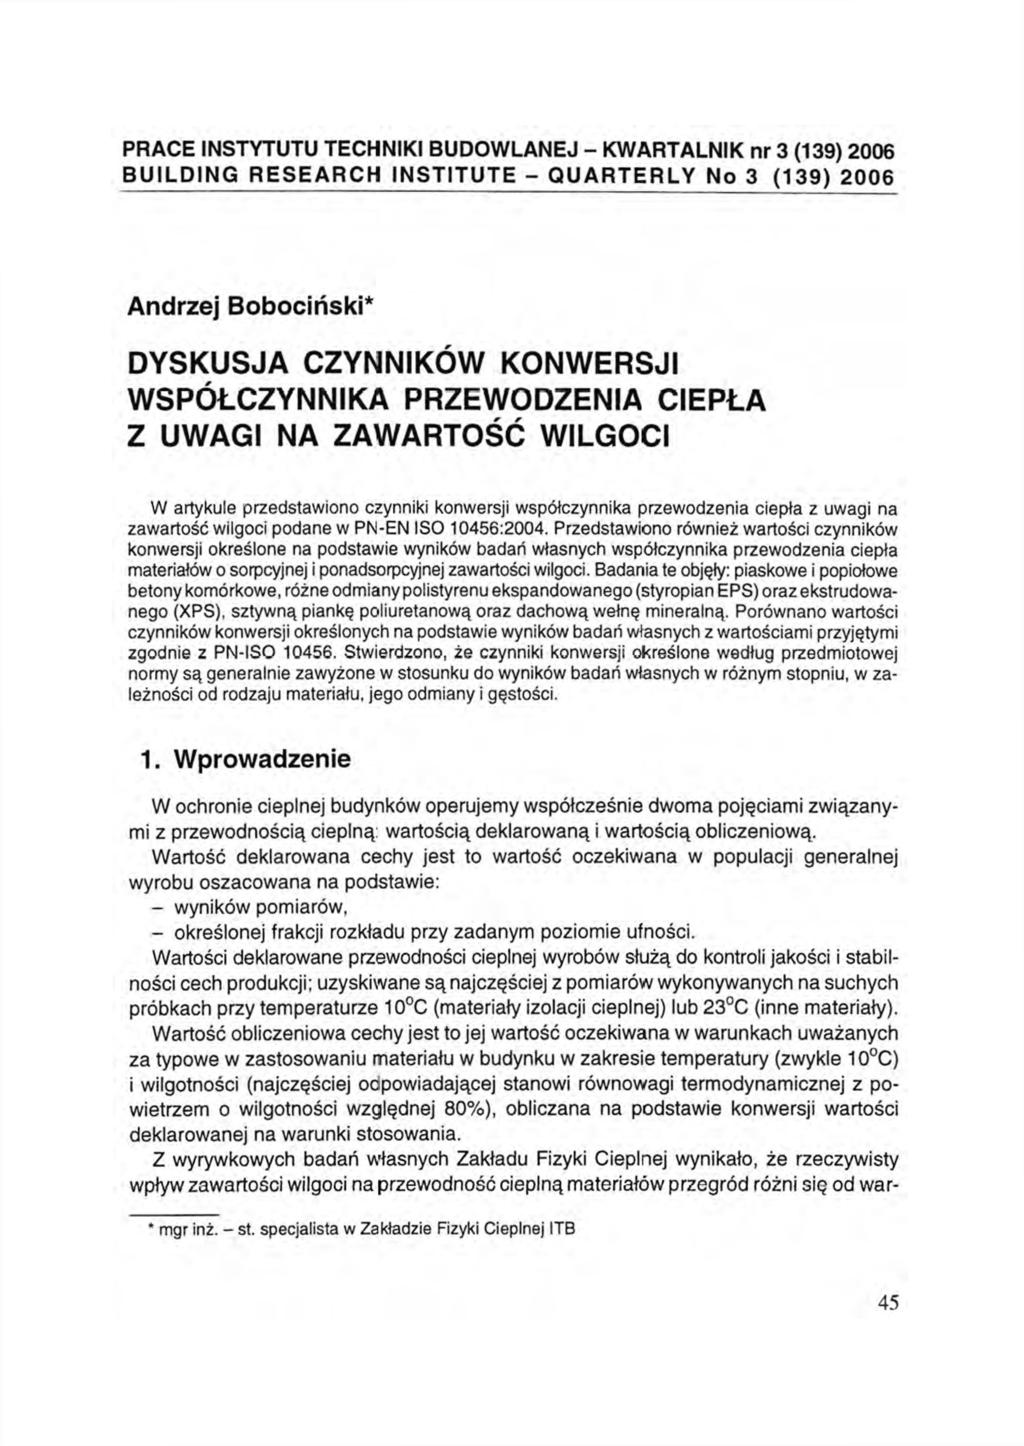 PRACE INSTYTUTU TECHNIKI BUDOWLANEJ - KWARTALNIK nr 3 (139) 2006 BUILDING RESEARCH INSTITUTE - QUARTERLY No 3 (139) 2006 Andrzej Bobociński* DYSKUSJA CZYNNIKÓW KONWERSJI WSPÓŁCZYNNIKA PRZEWODZENIA